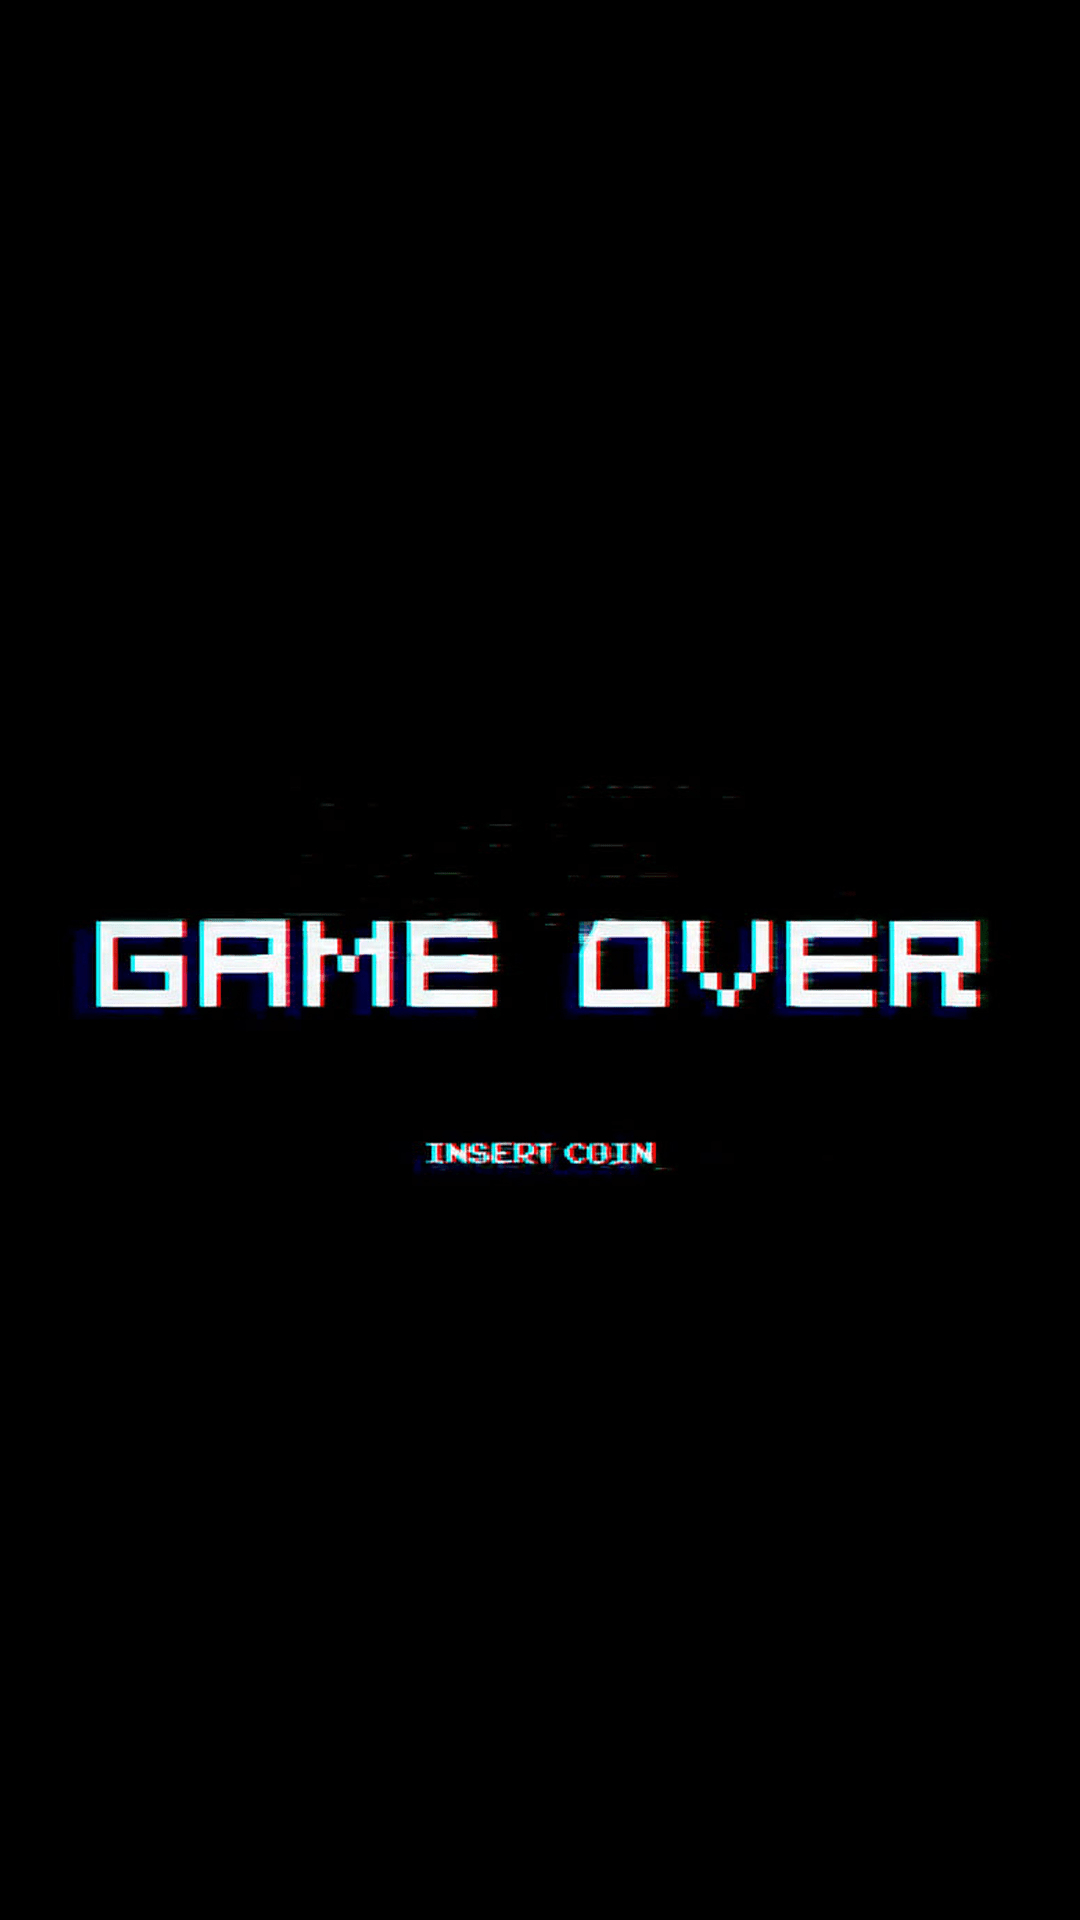 The game over logo in a black background - Dark vaporwave